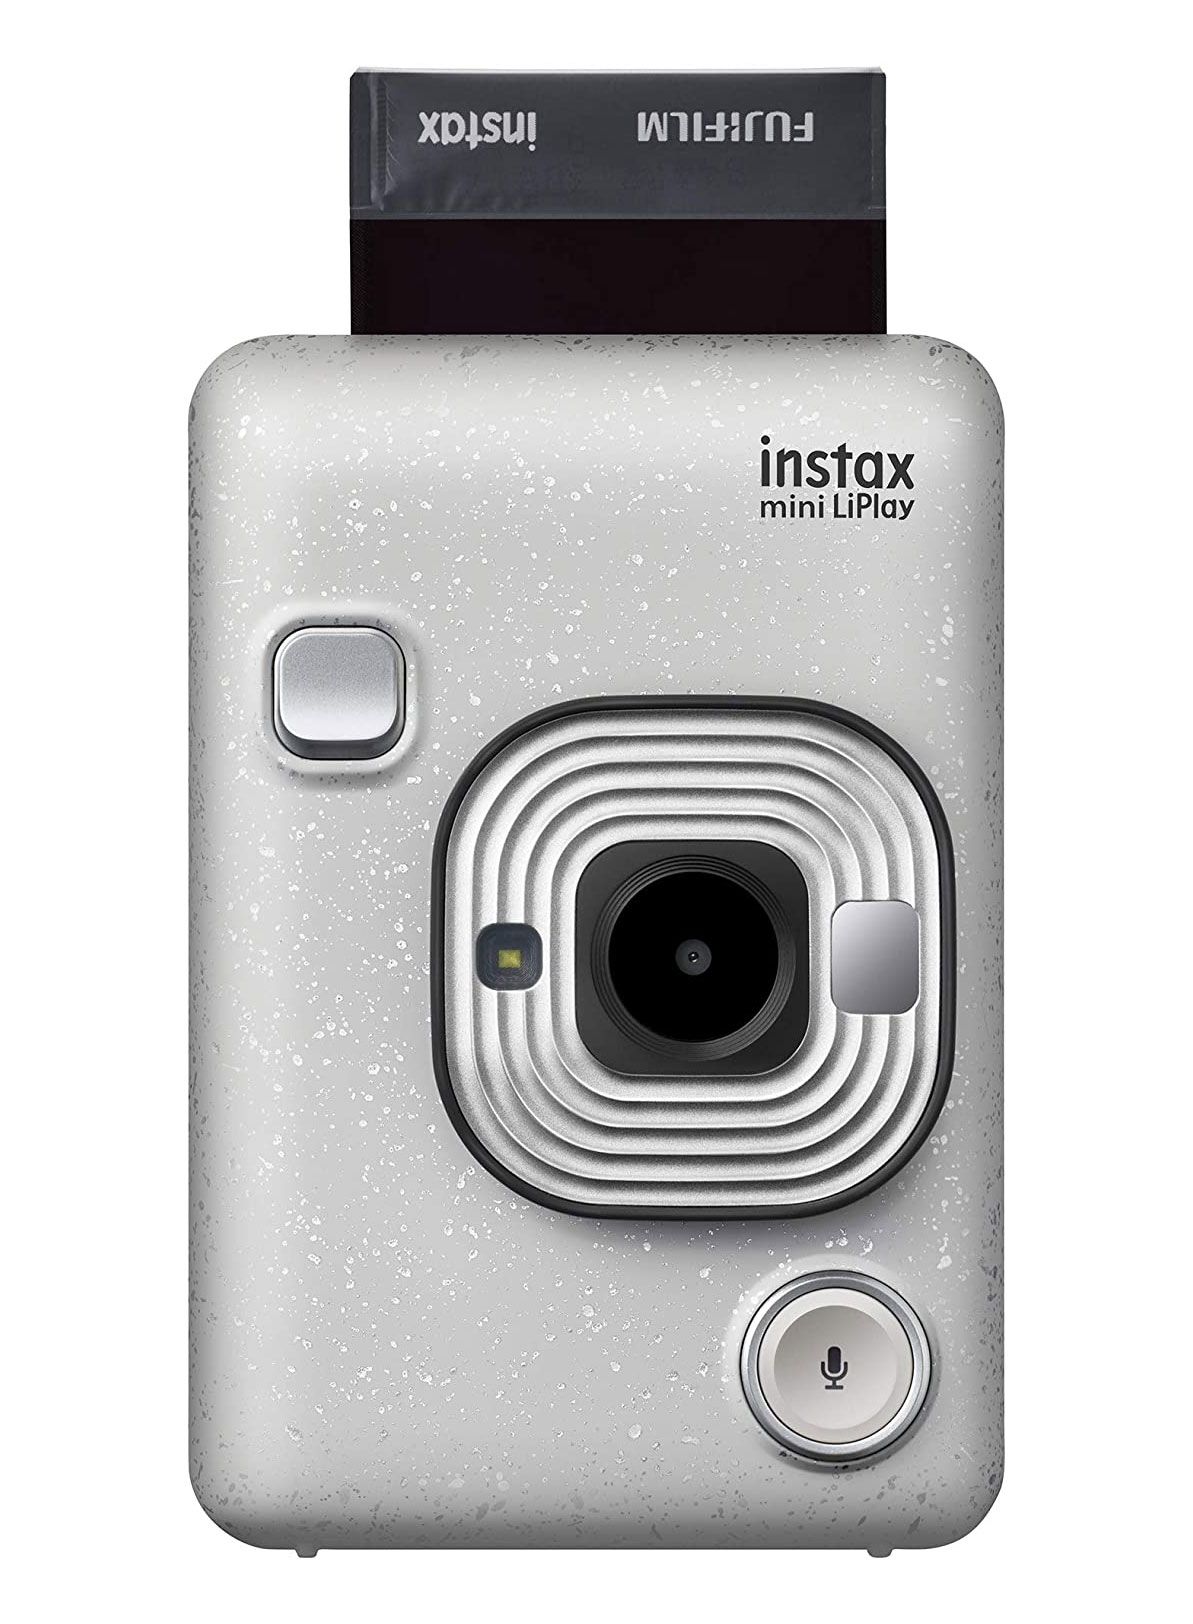 Lahjoja poikaystävälle, lahjaideoita poikaystäville - Valokuvaajalle: Fujifilm Instax Mini Liplay Hybrid-pikakamera